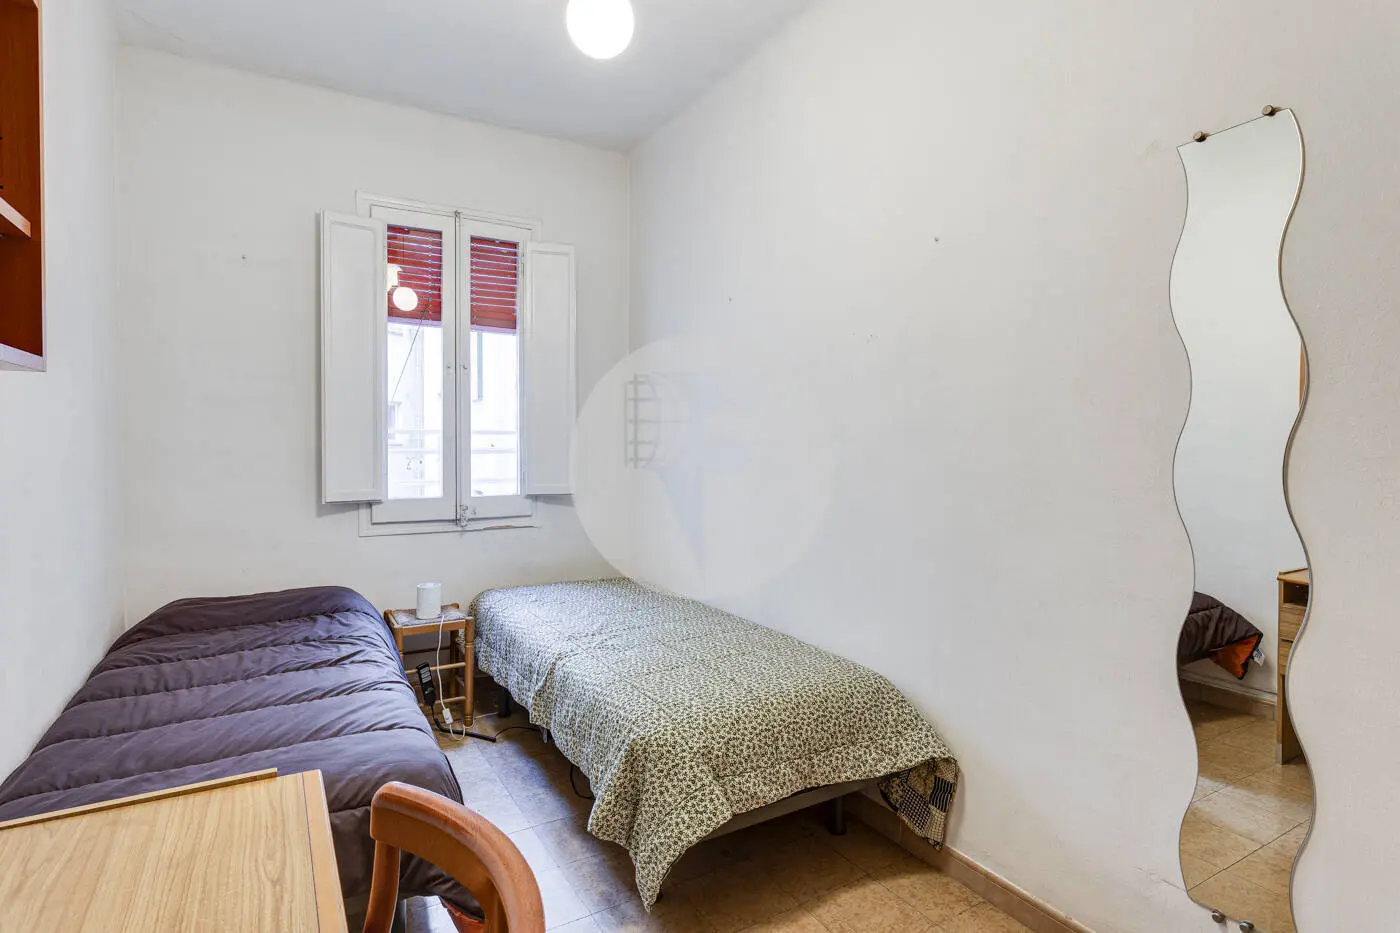 Piso de 3 habitaciones ubicado en el barrio de la Nova Esquerra de l'Eixample de Barcelona. 23